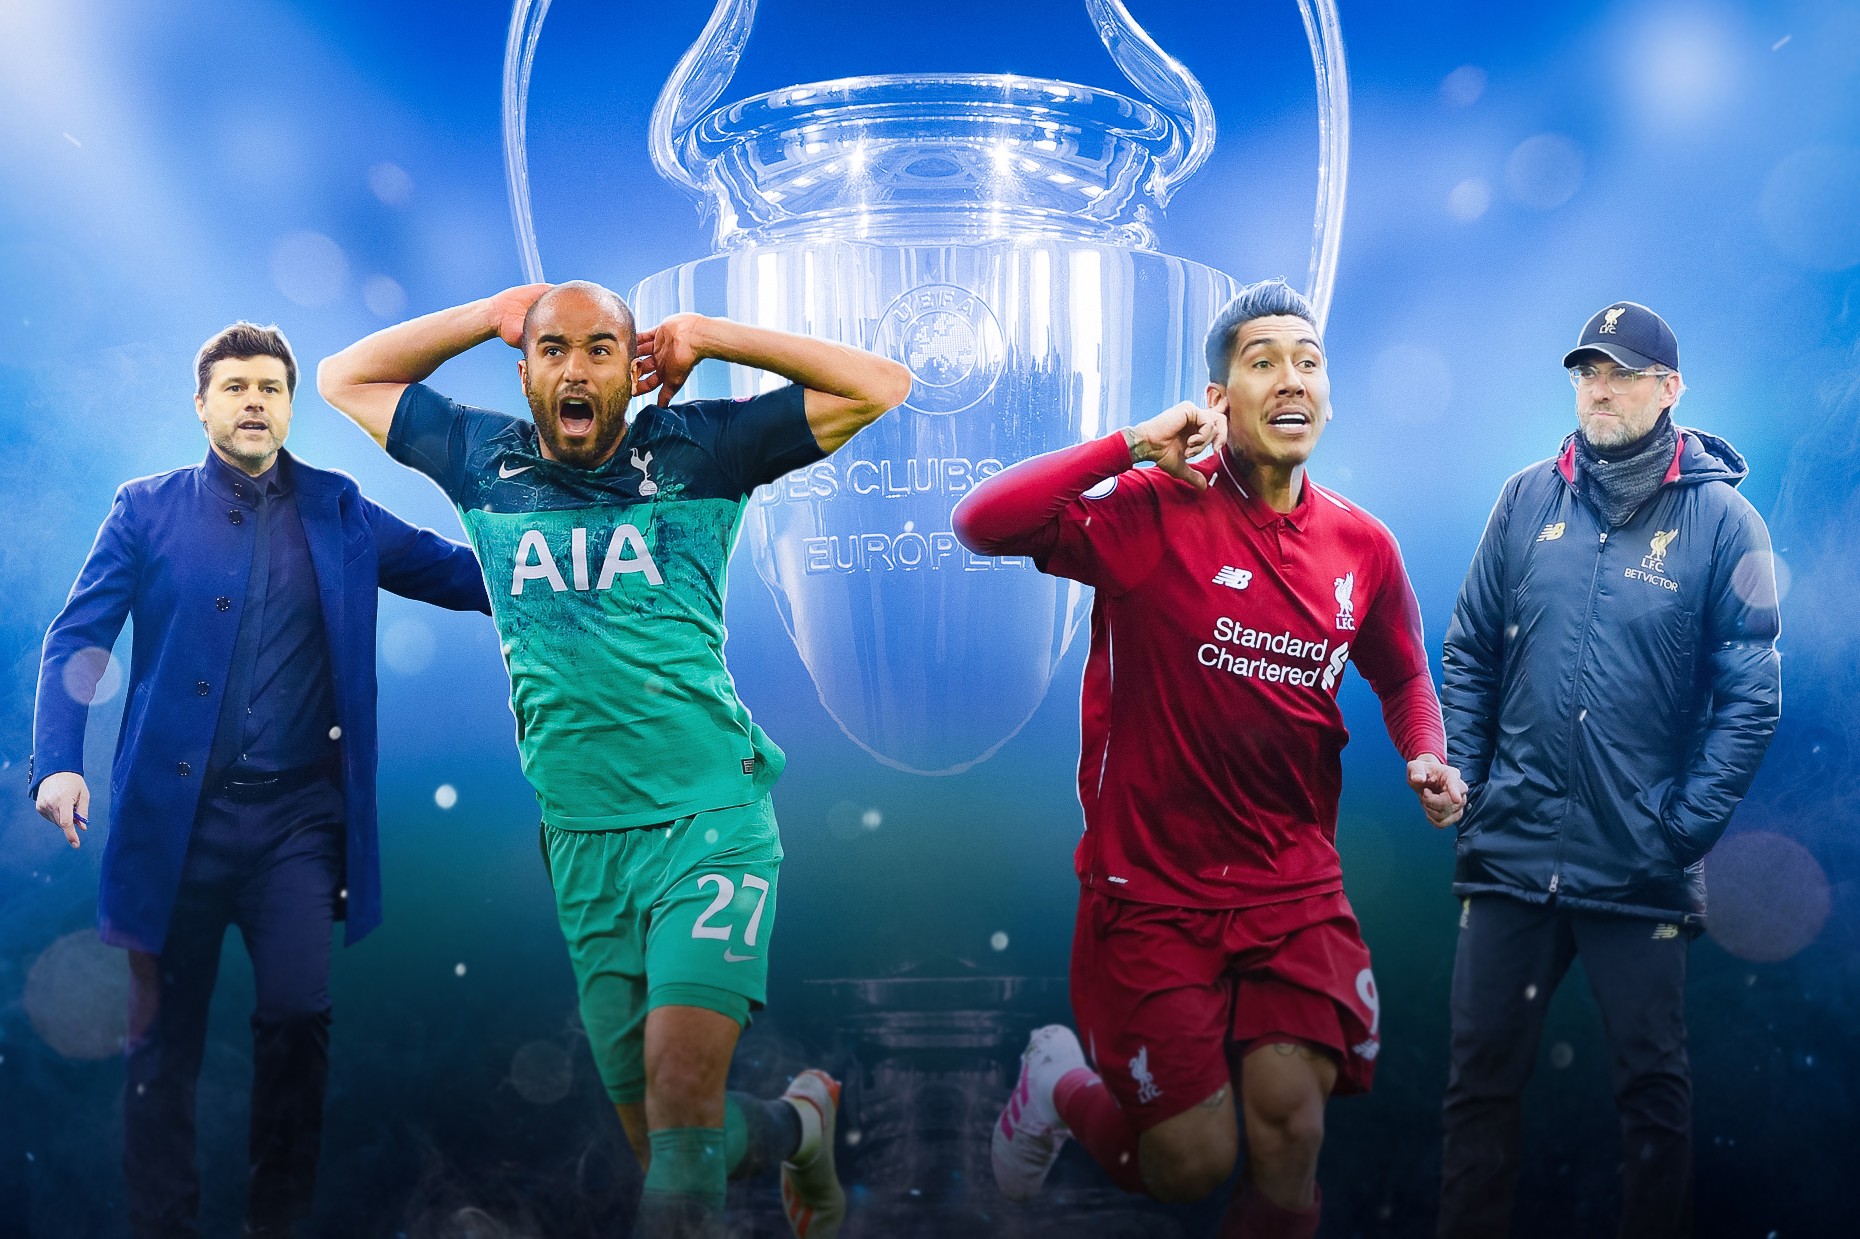 Análise das Finais da Champions League 2019-20 - Leitura de Jogo